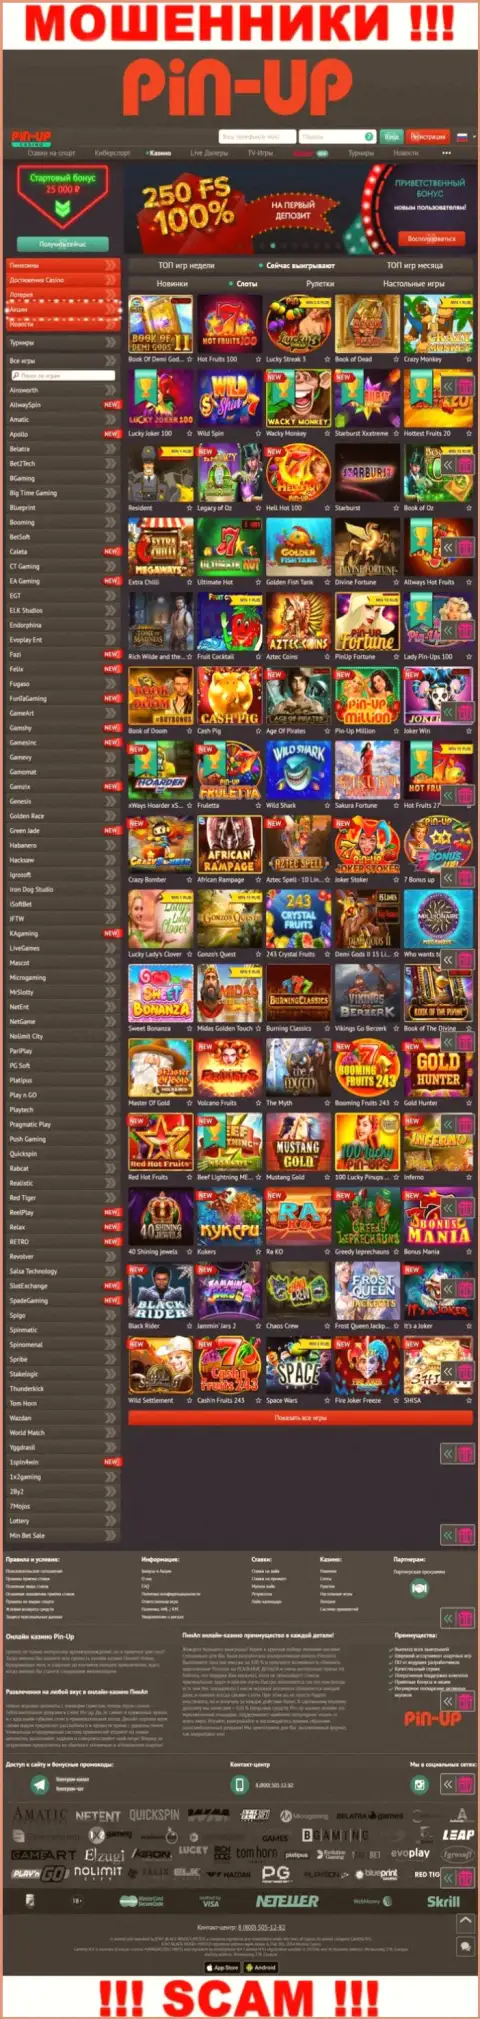 Pin-Up Casino - это официальный веб-ресурс internet махинаторов Пин Ап Казино